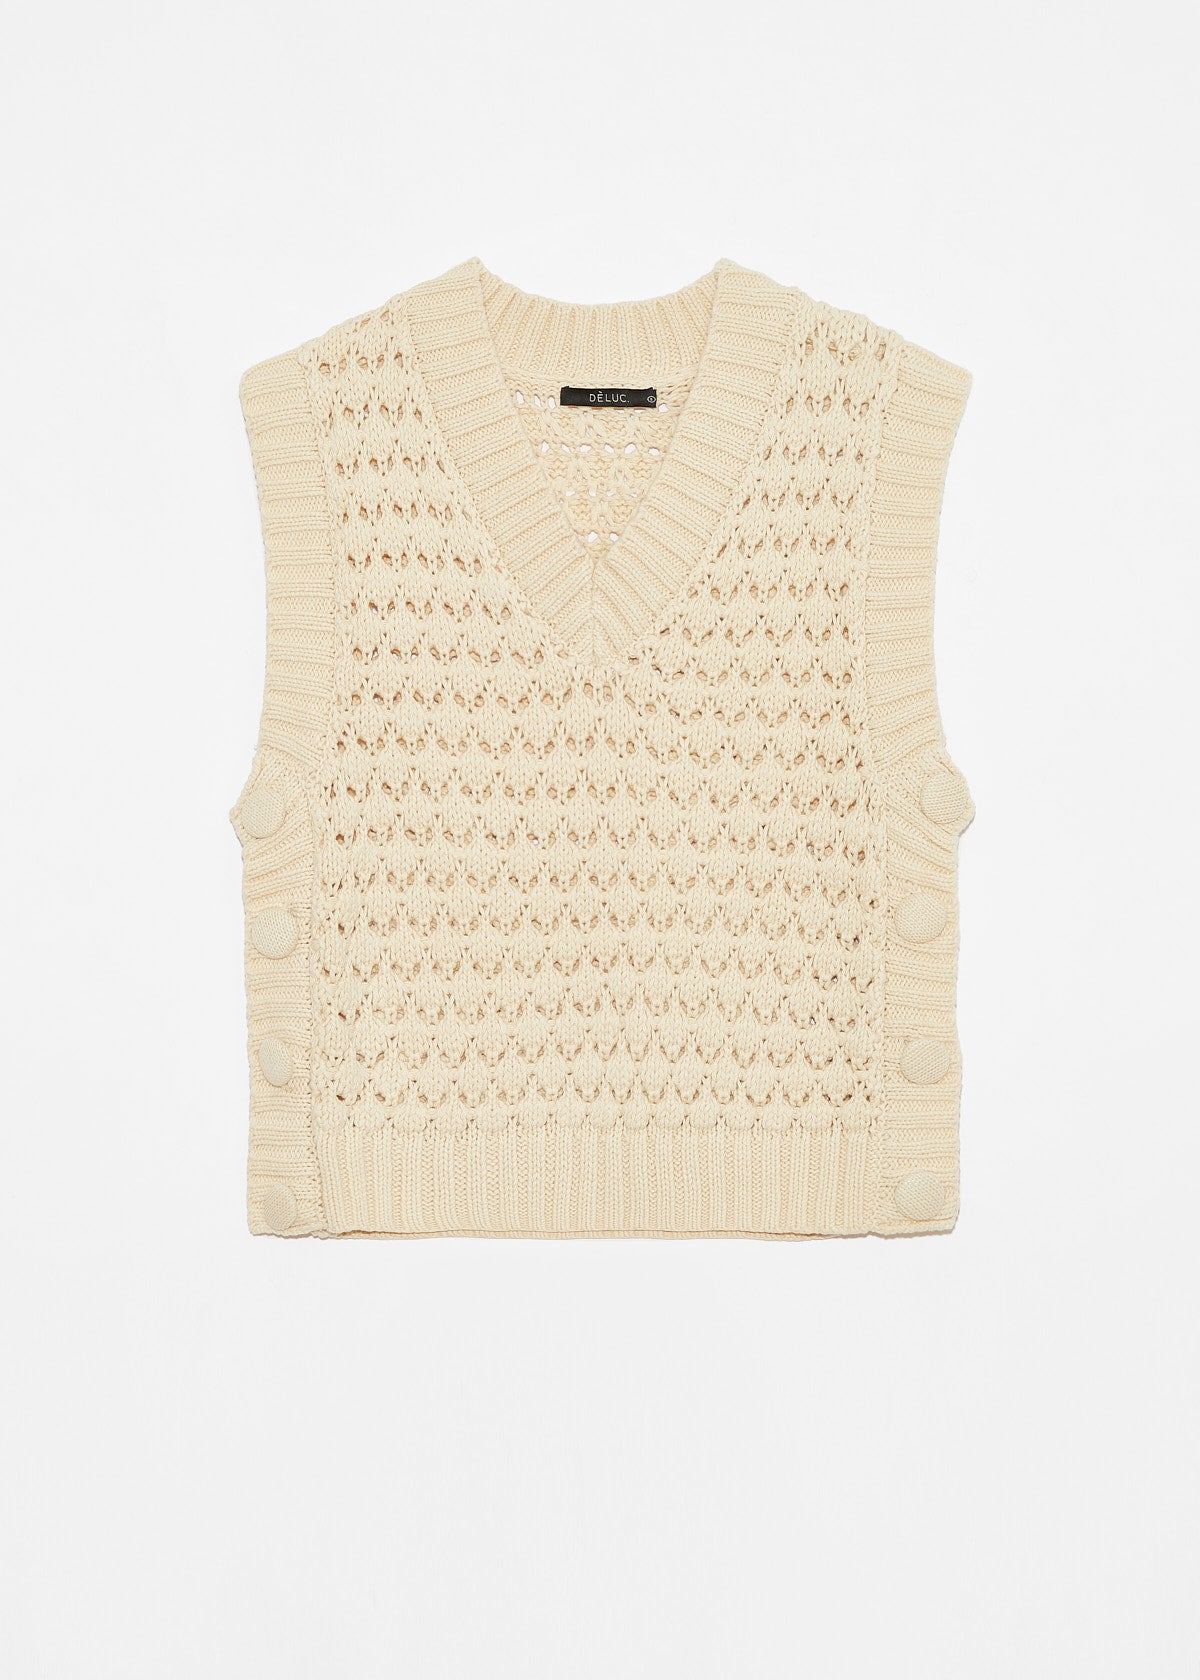 DÈLUC - Beckmann Knitted Vest - Off White